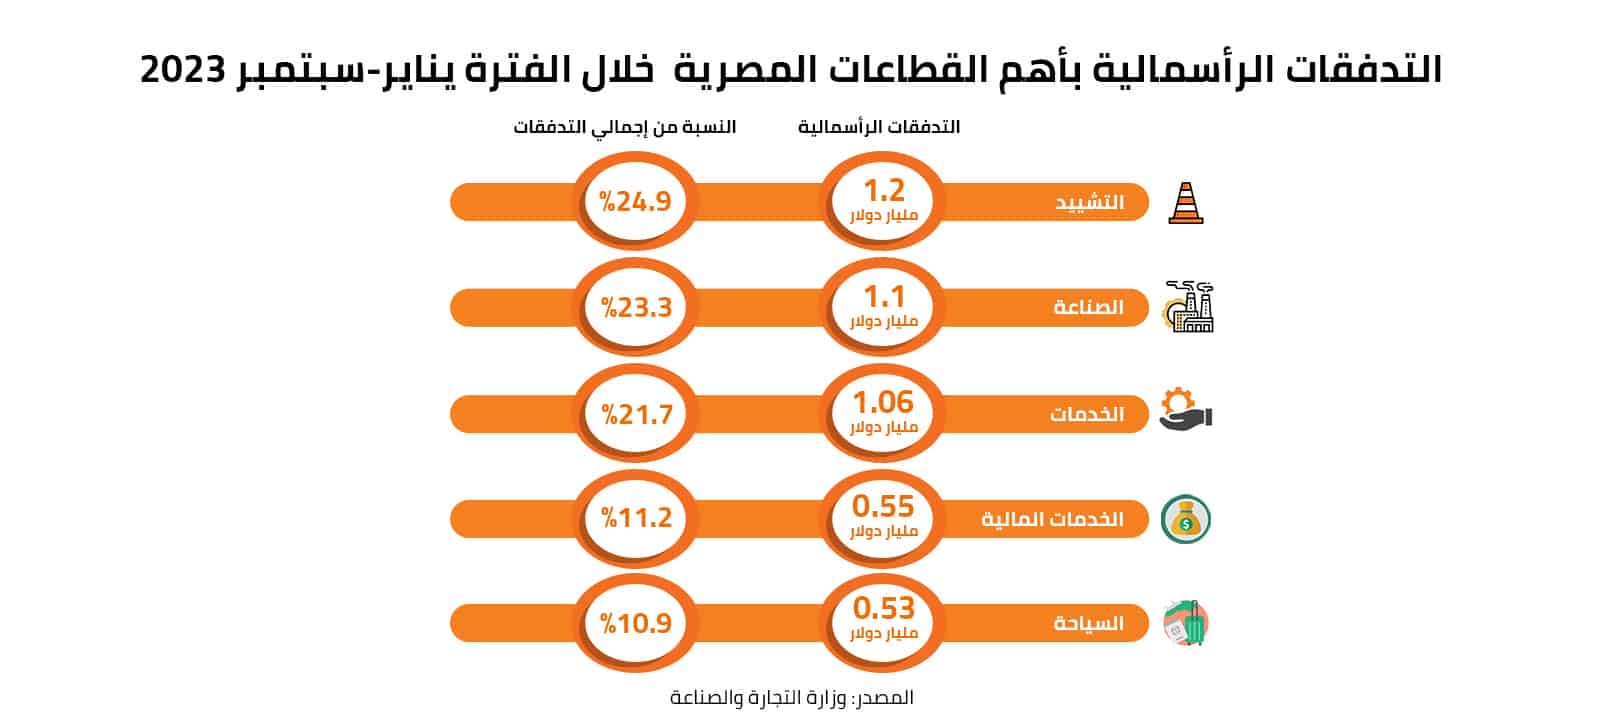 التدفقات الرأسمالية بأهم القطاعات المصرية خلال الفترة يناير- سبتمبر 2023 